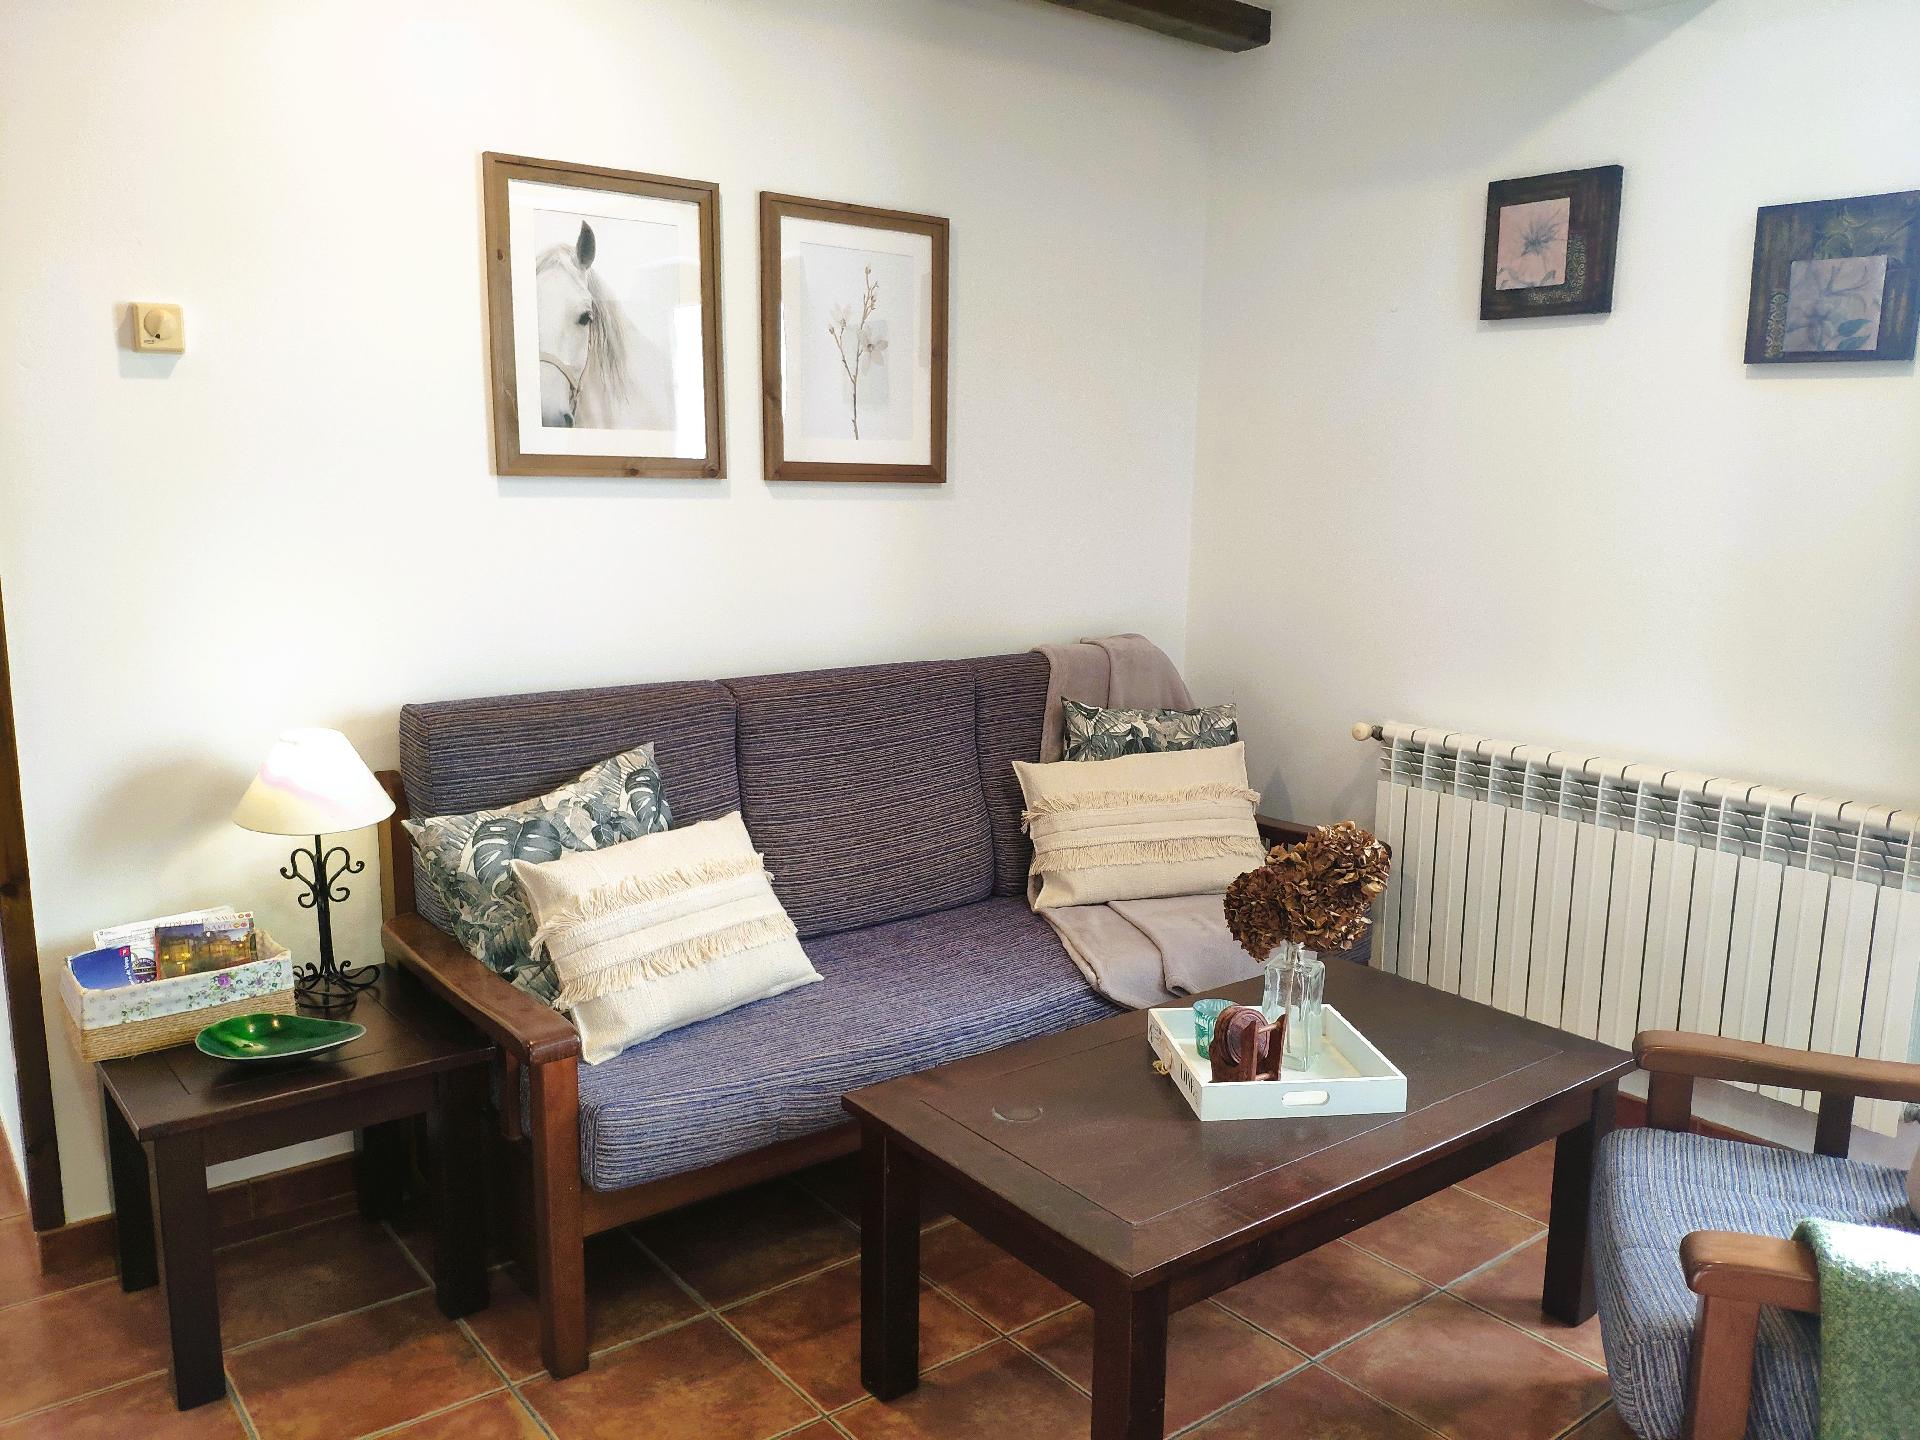 Ferienwohnung für 3 Personen 1 Kind ca 65 m² in Navia Costa Verde Spanien Küste von Asturien